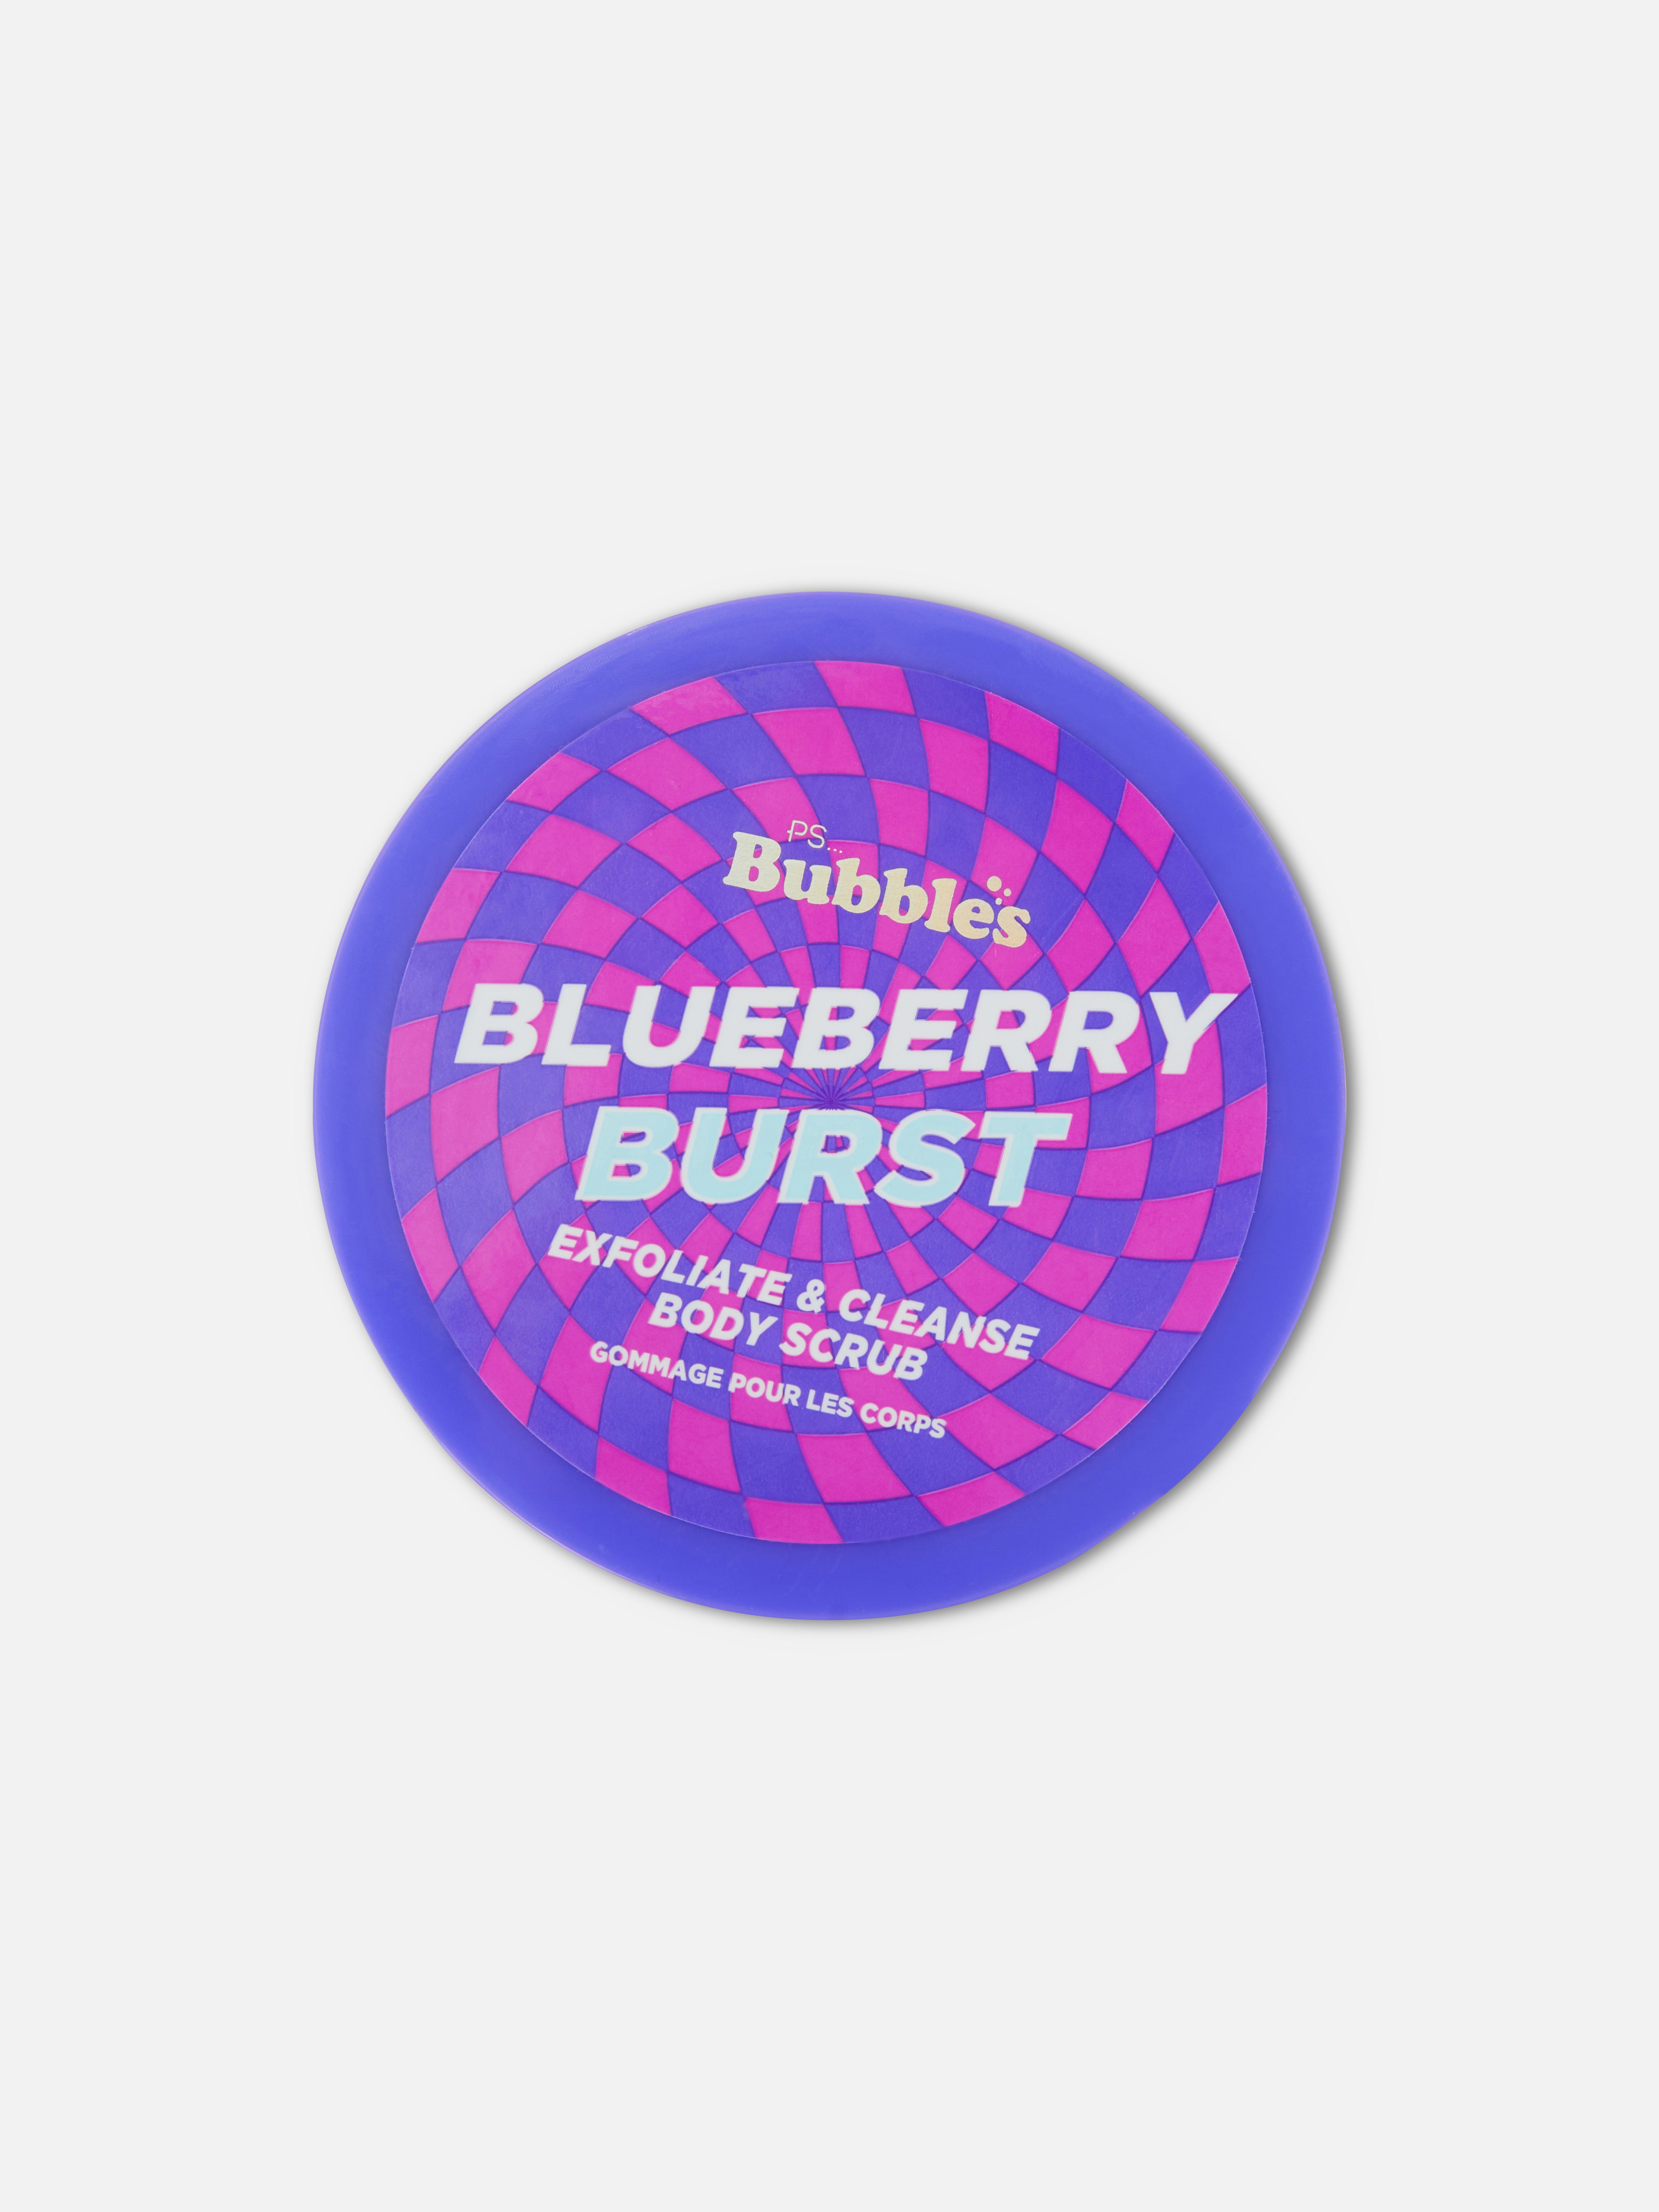 Gommage pour le corps Blueberry Burst PS... Bubble's